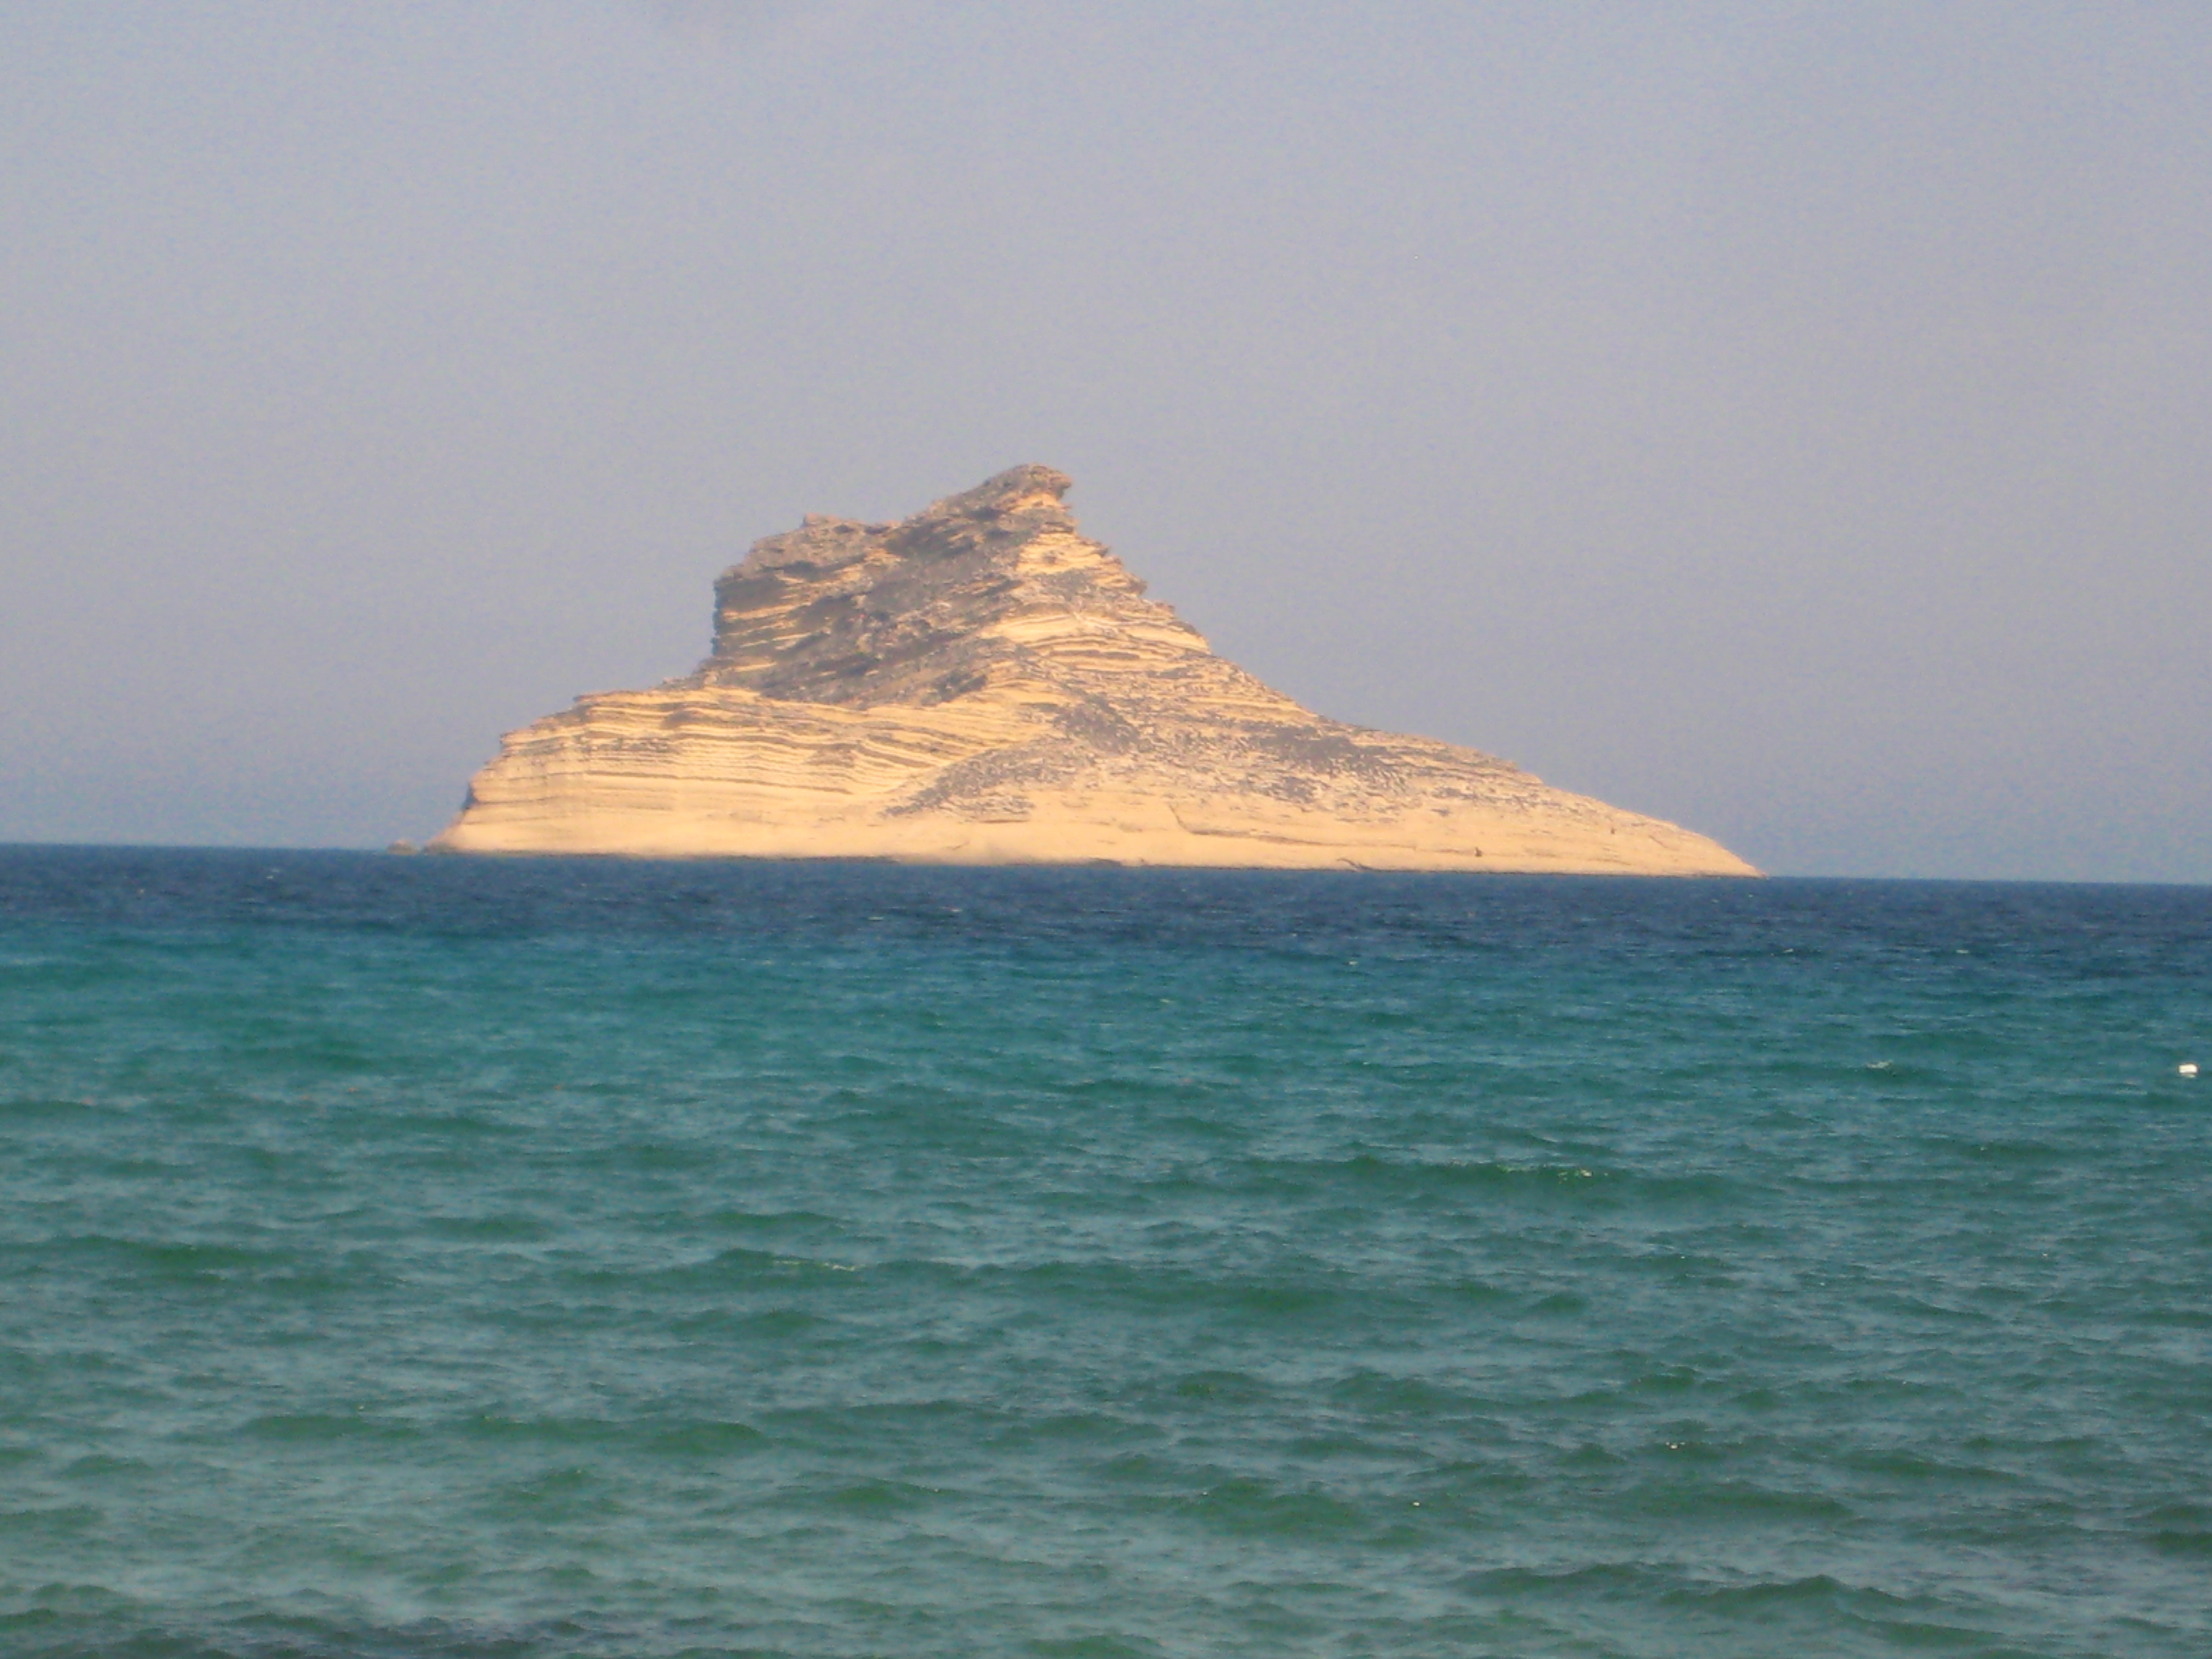 Un îlot tunisien si mystérieux